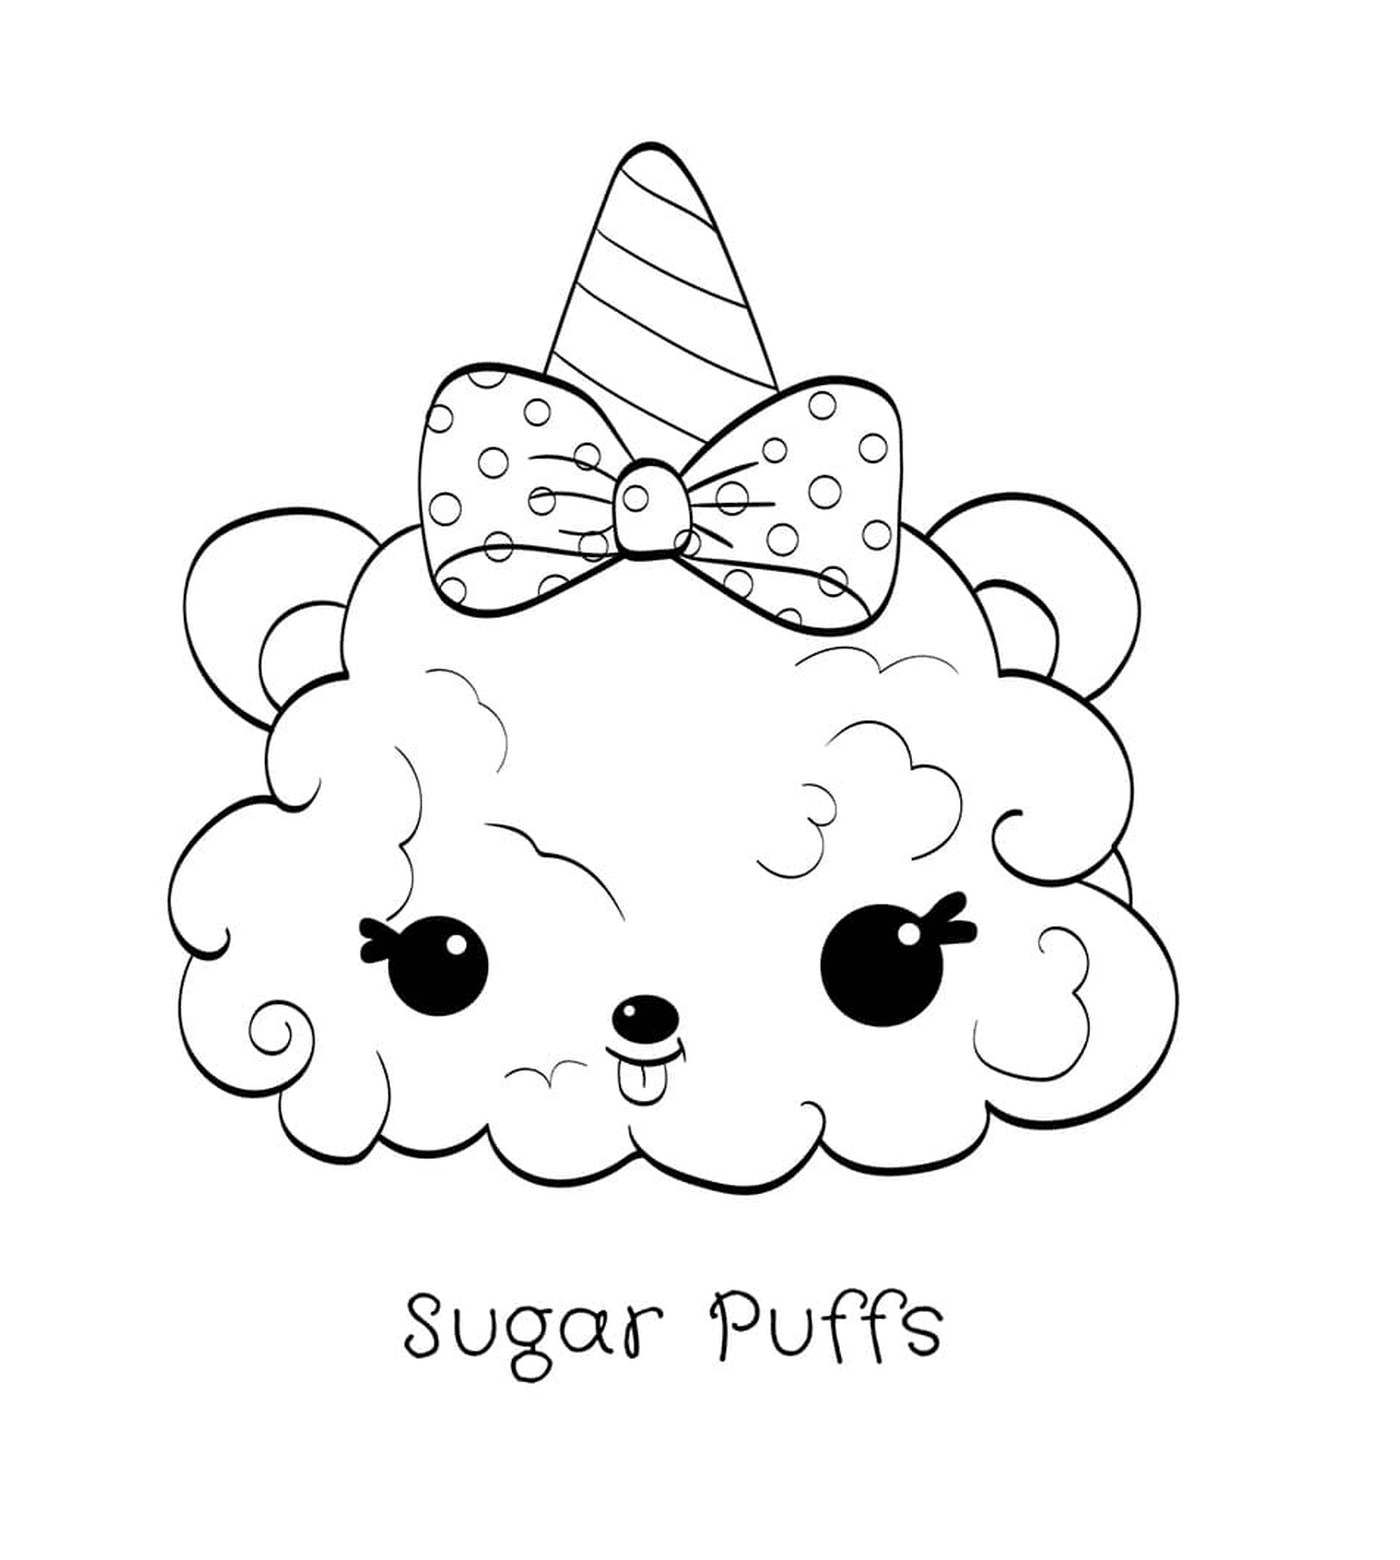  Sugar puffs 